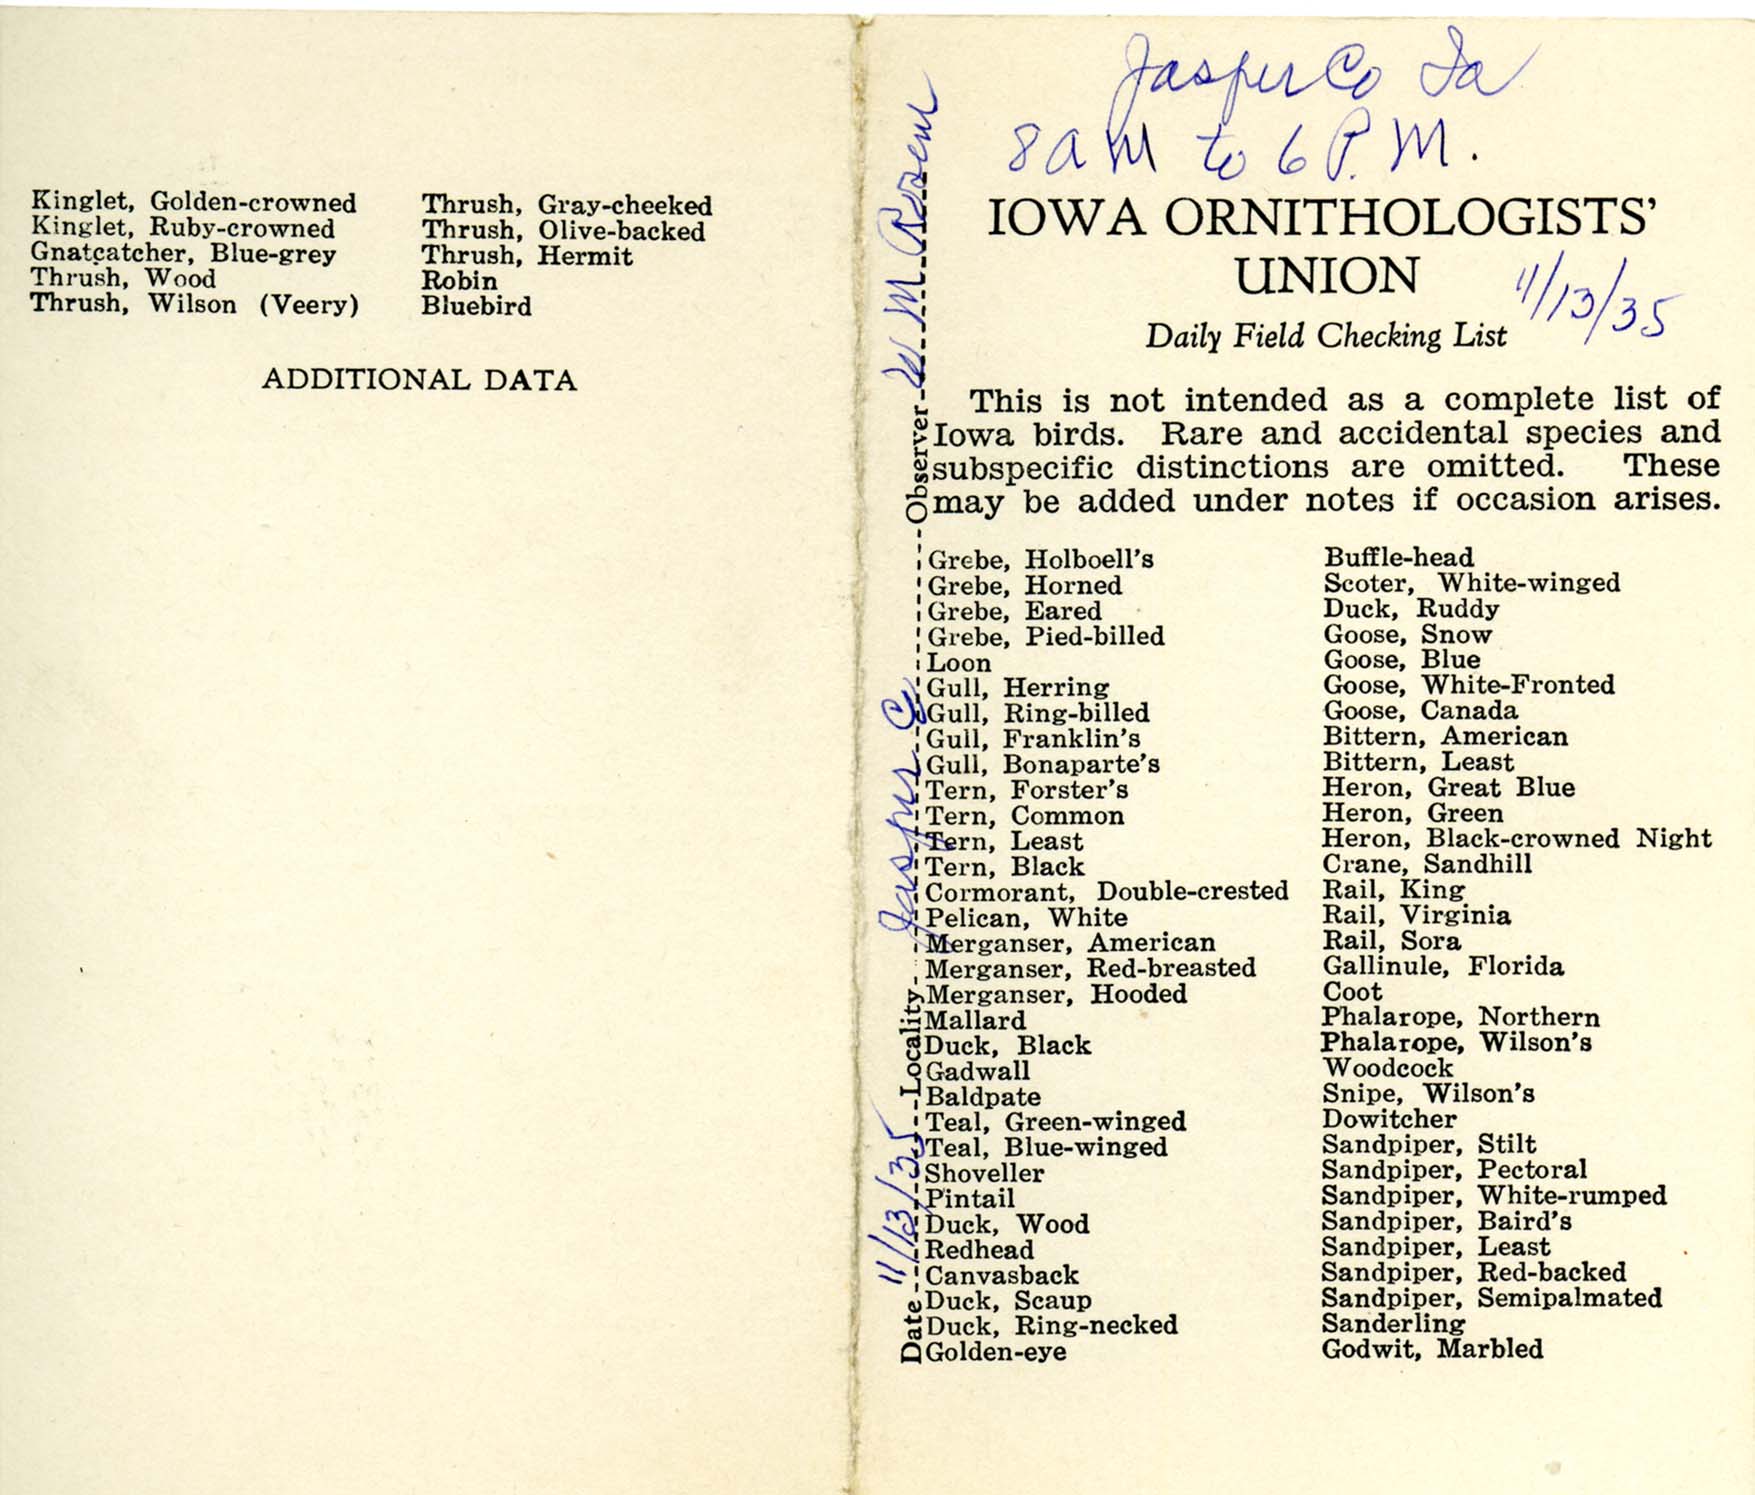 Daily field checking list, Walter Rosene, November 13, 1935